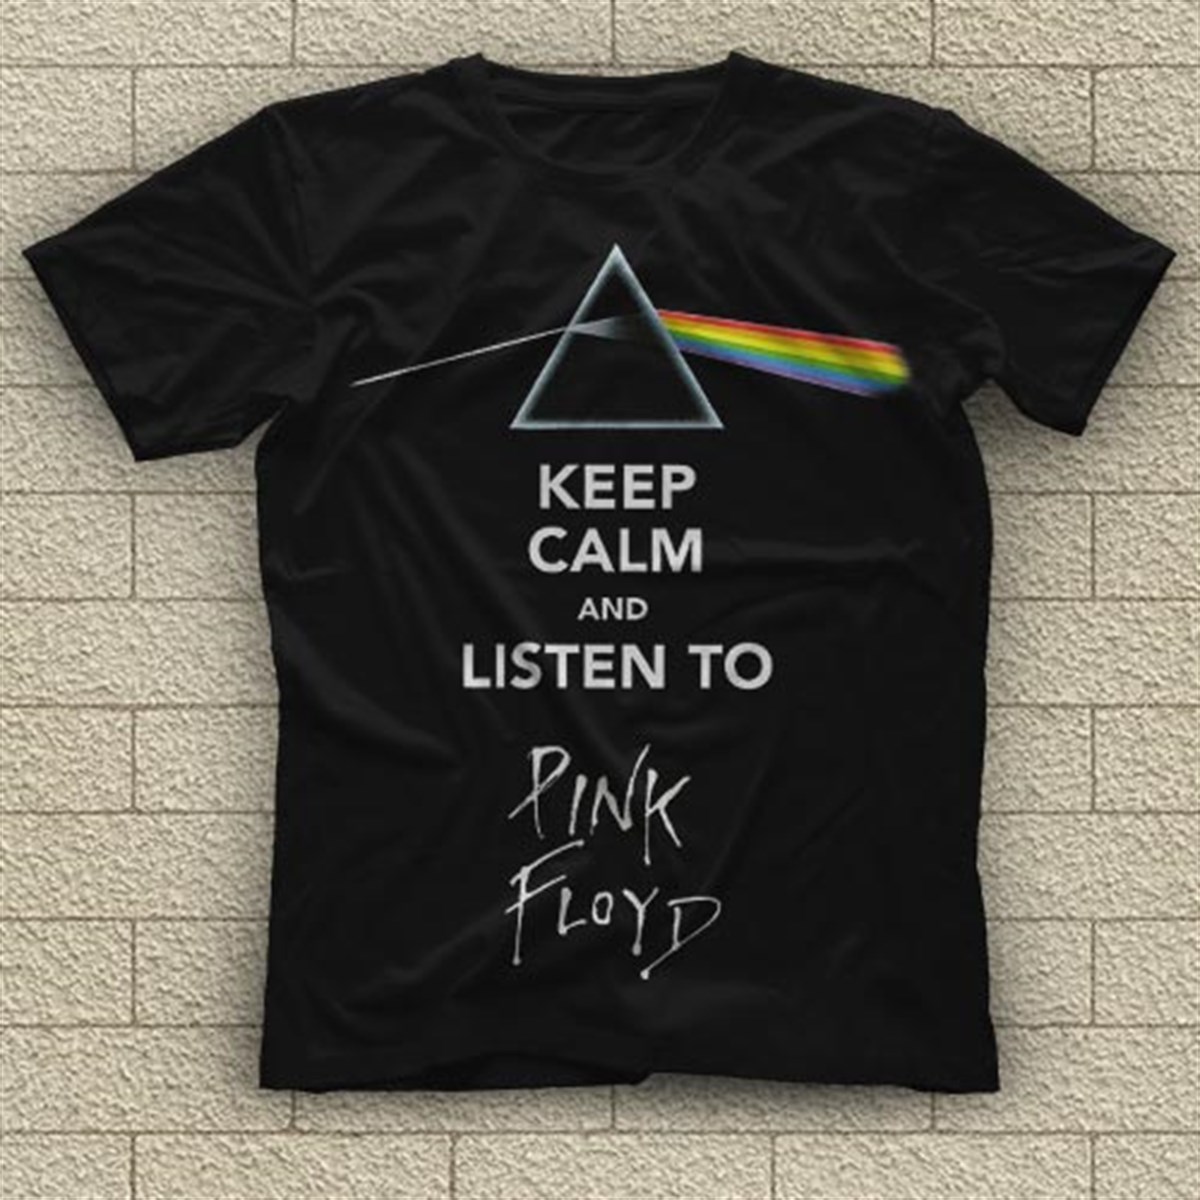 Pink Floyd T shirt,Music Band,Unisex Tshirt 33